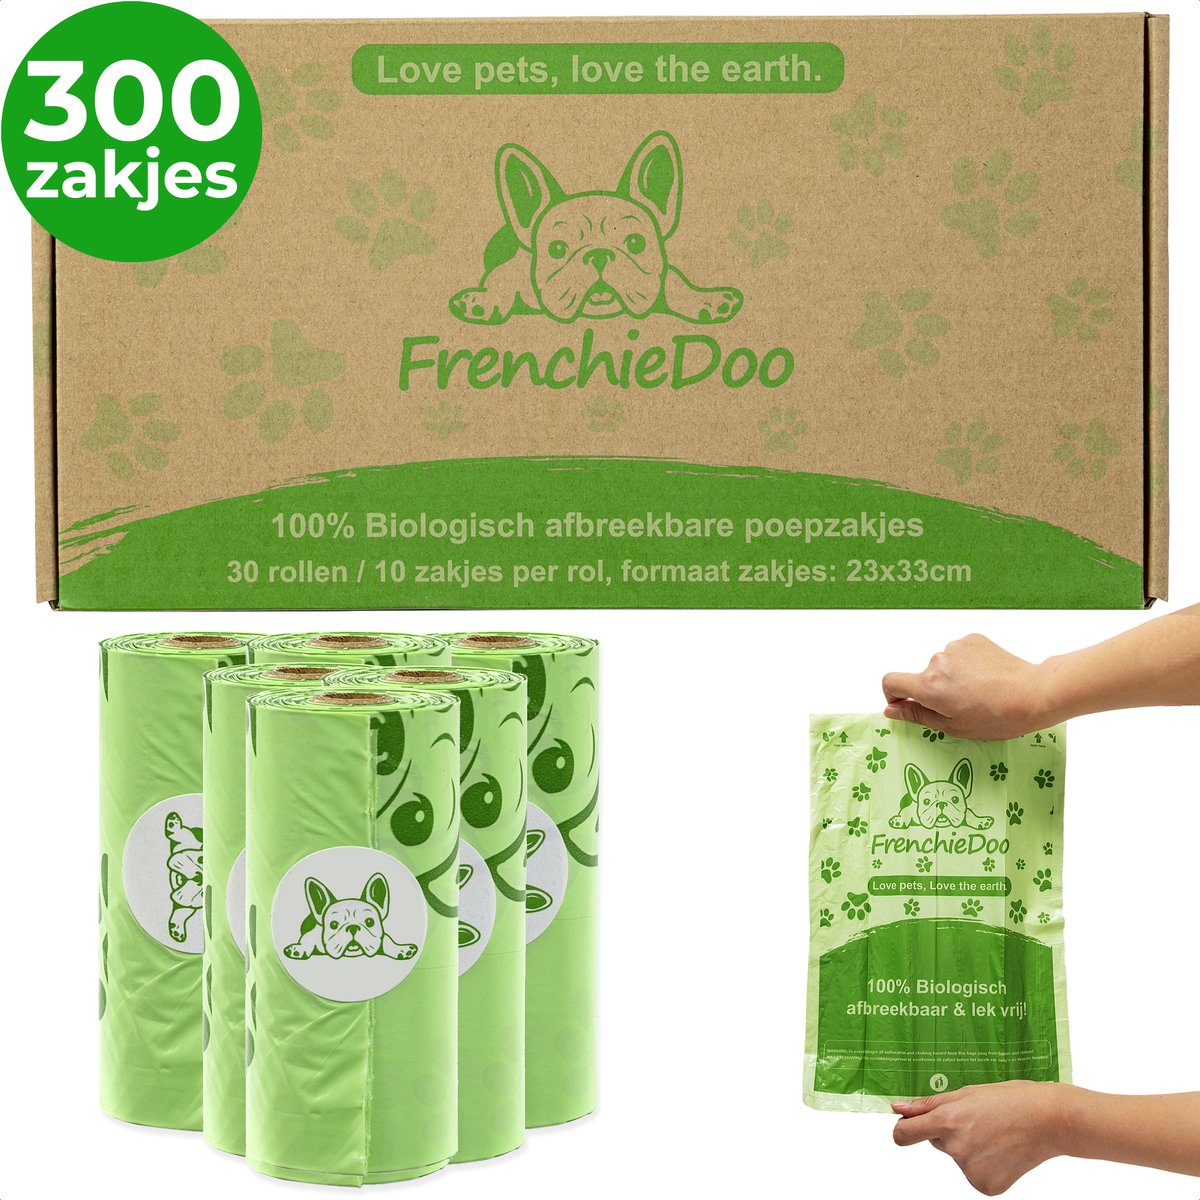 Milieubewuste hondenpoepzakjes – 300 stuks – Biologisch afbreekbaar – 100% Lekvrij - Poepzakjes Hond - 30 rollen - Frenchiedoo